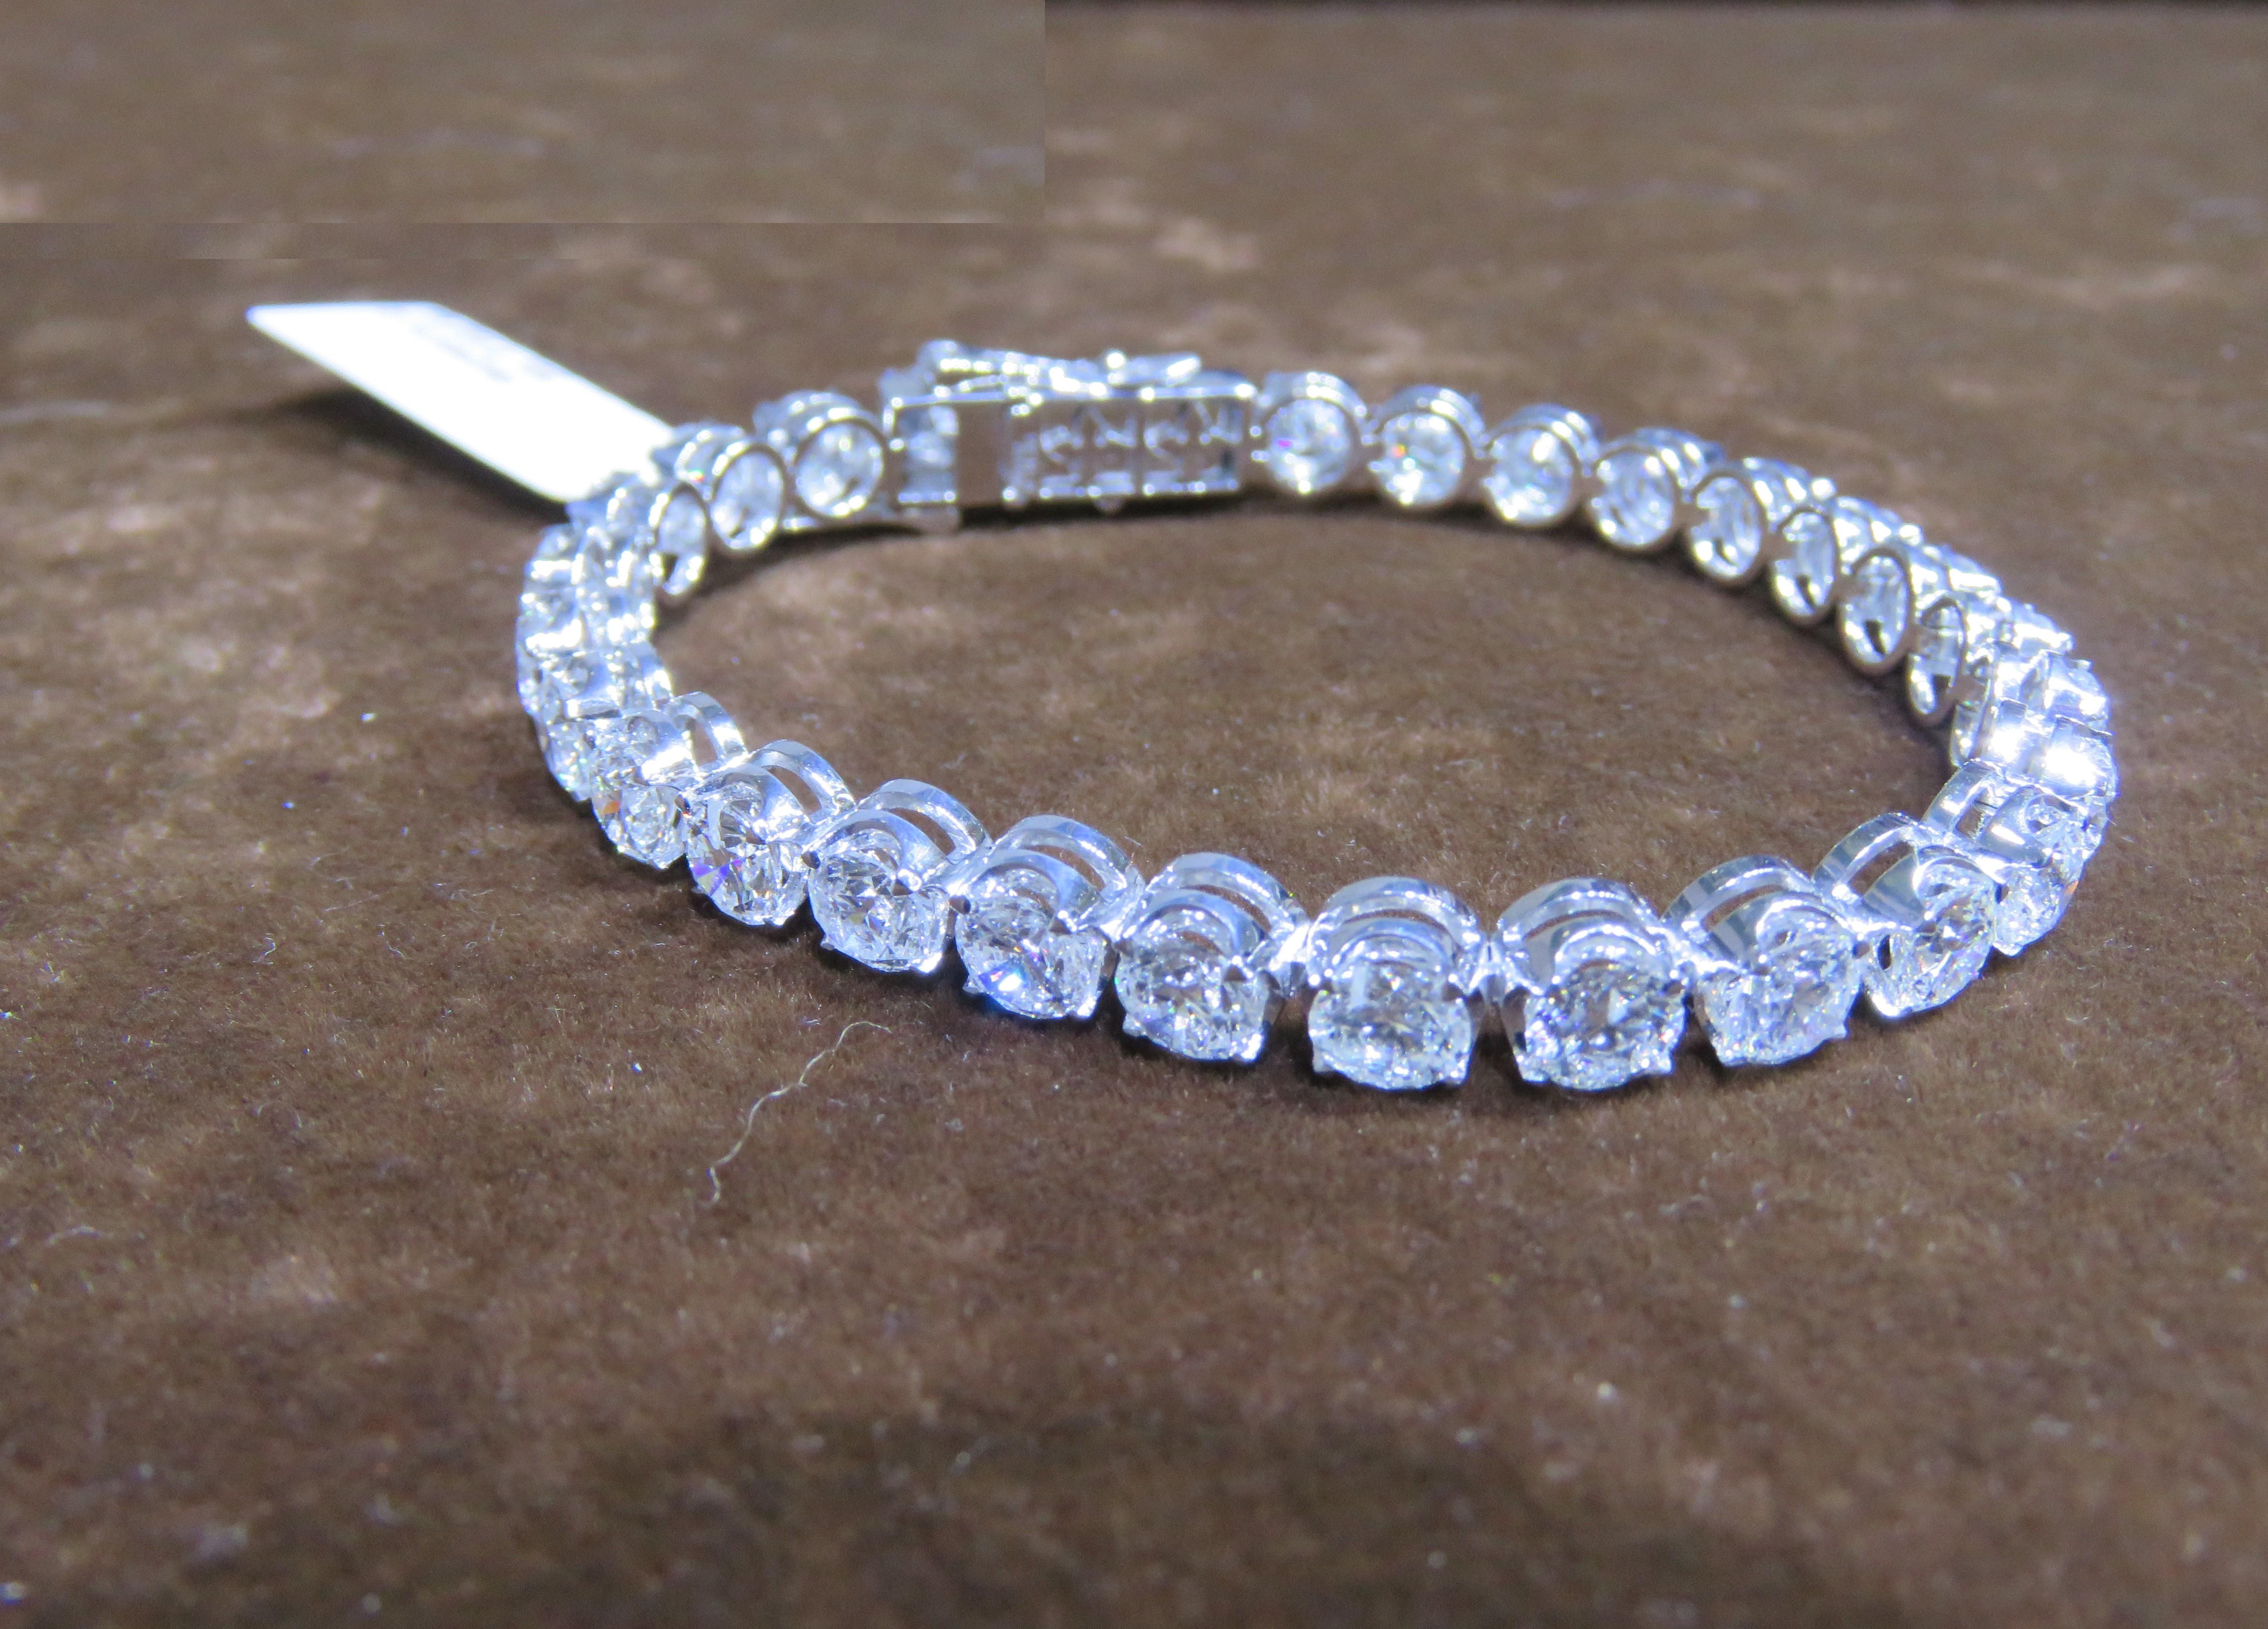 L'article suivant que nous vous proposons est ce Magnifique Rare Important Bracelet Tennis en or blanc 18KT à gros diamants ronds scintillants. Le bracelet est composé de plus de 25CTS de magnifiques diamants ronds rares et brillants !!! Les